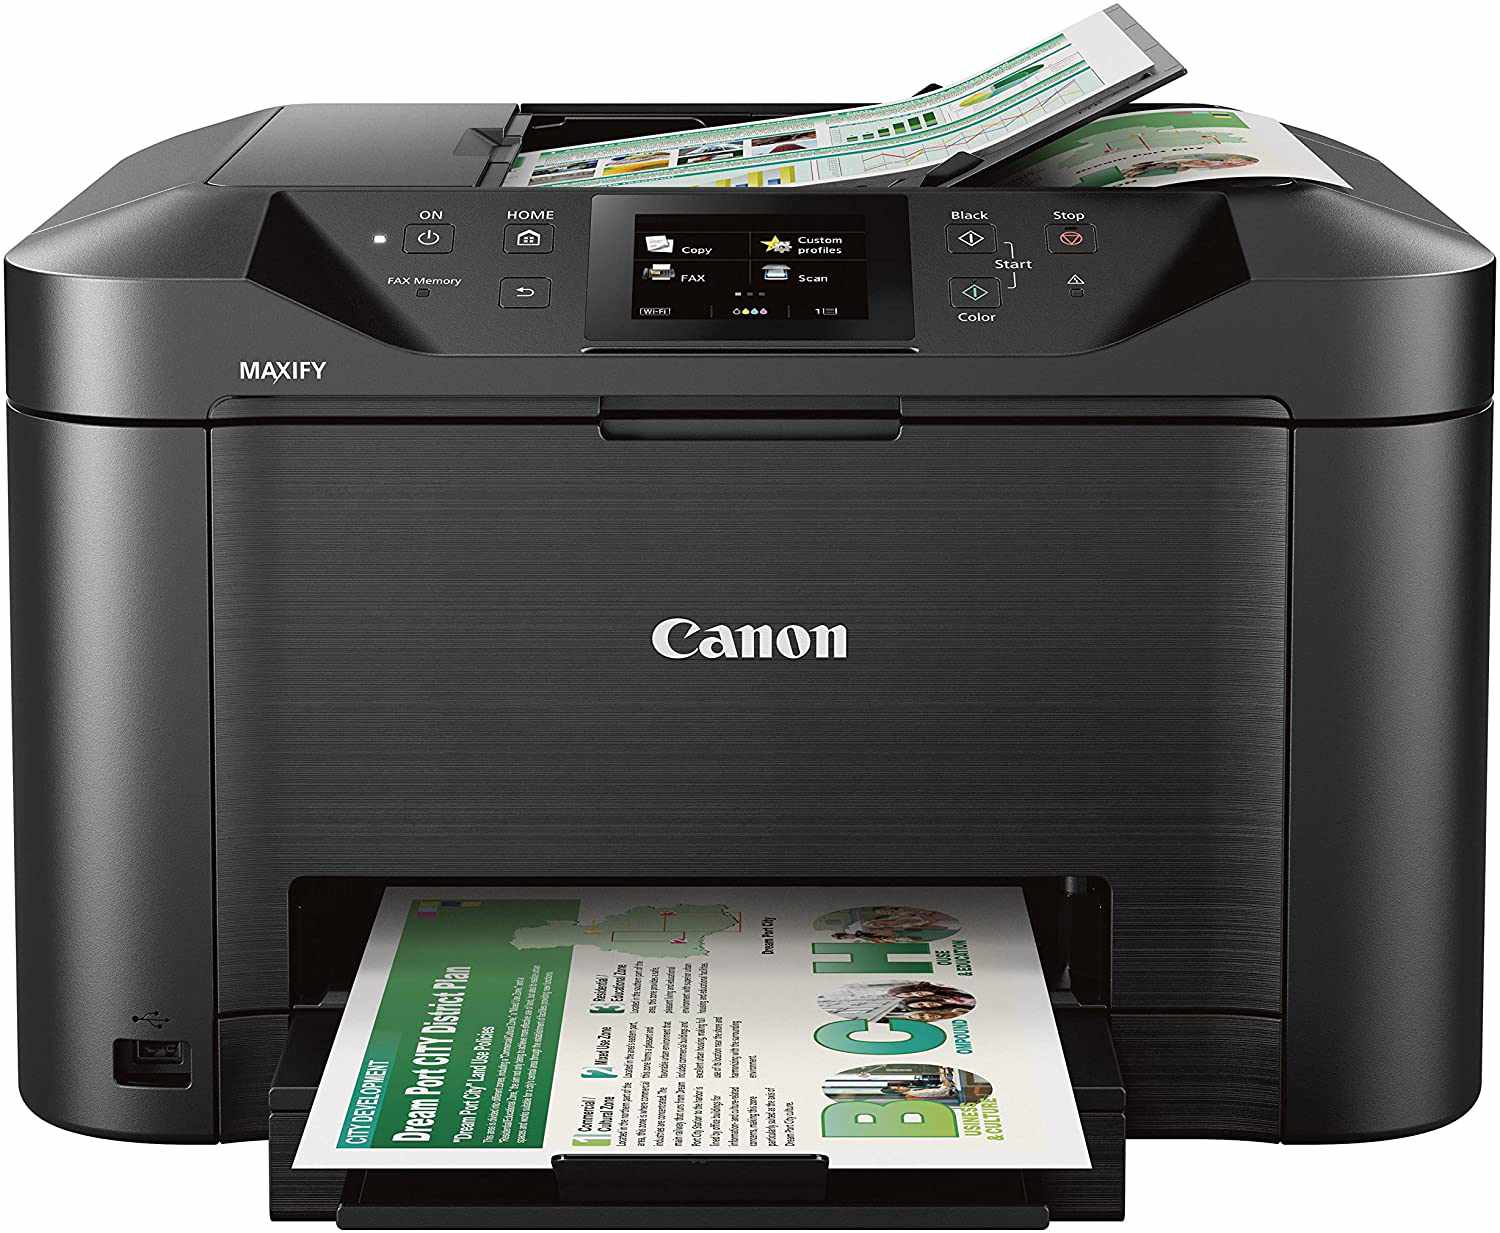 printers-met-automatische-duplex-adf-s-2021